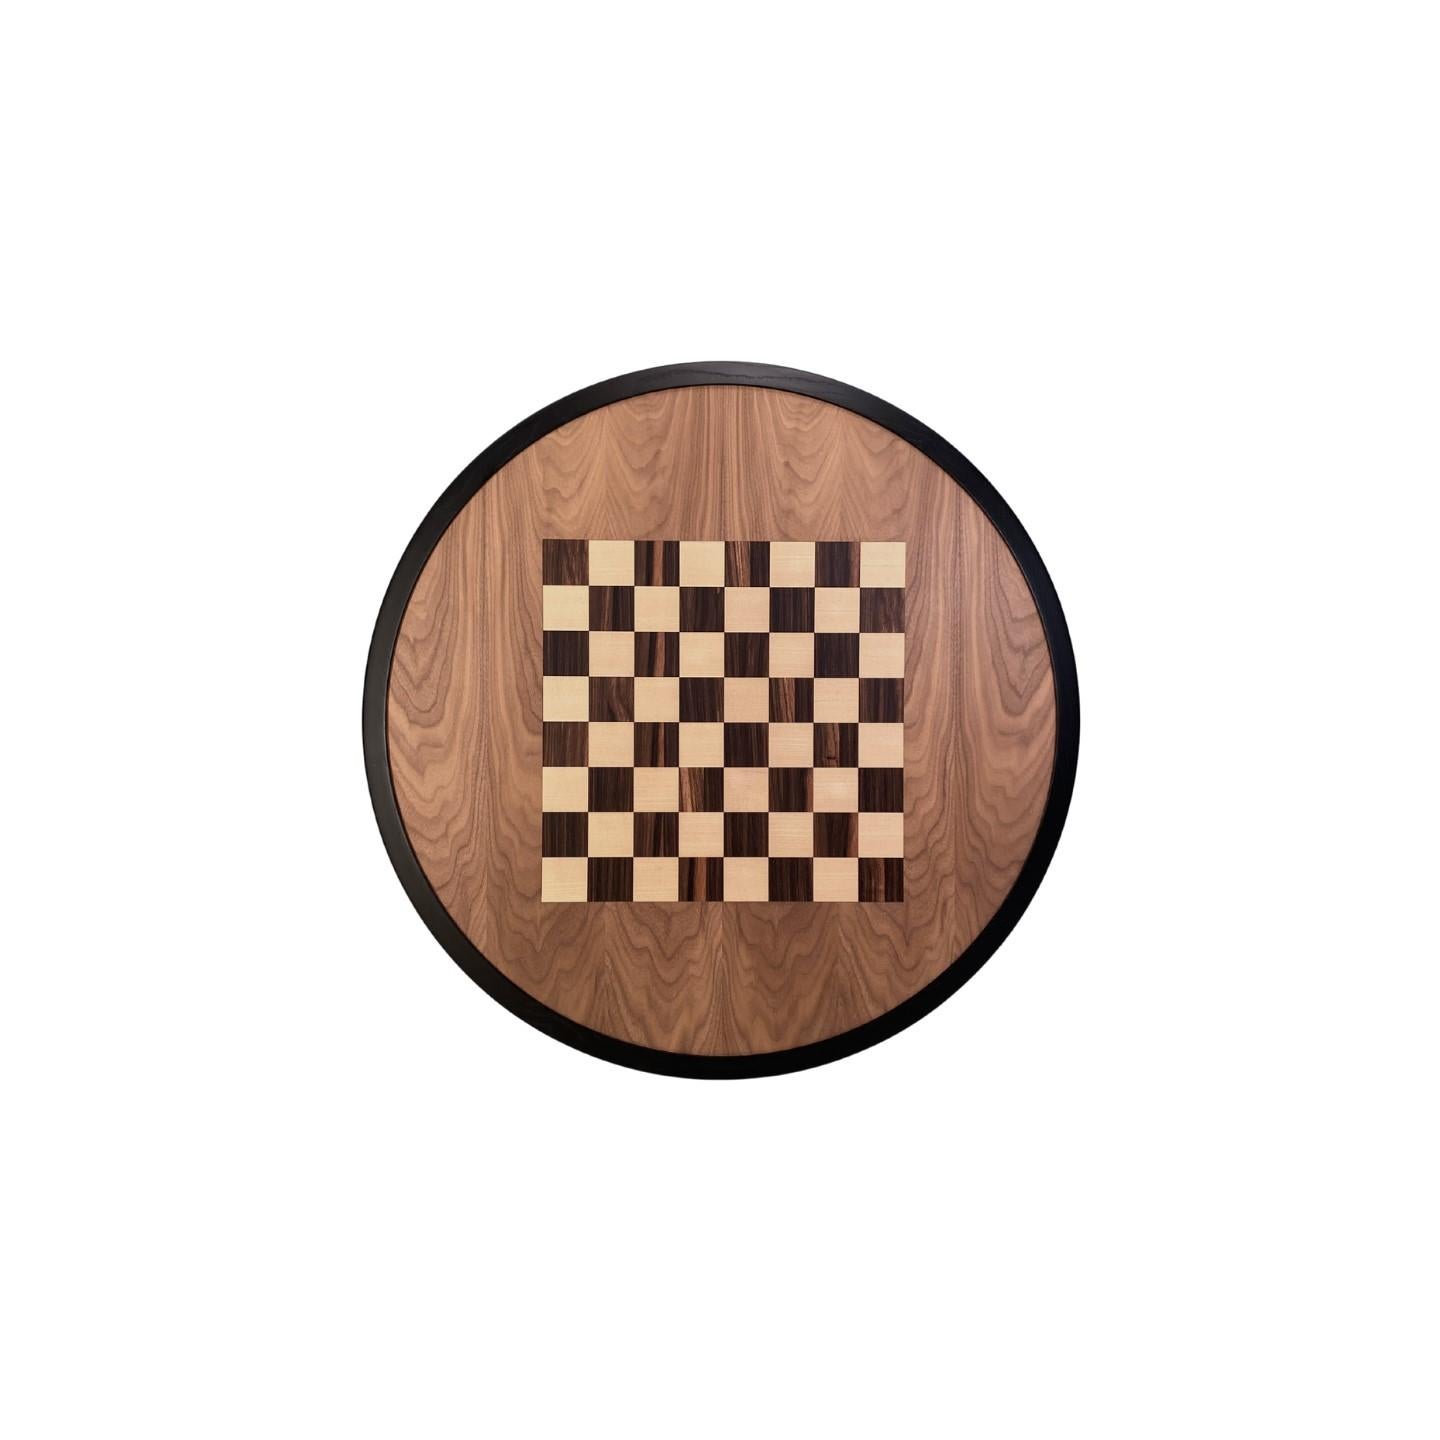 Italian Morelato, Carambola Chessboard Table For Sale